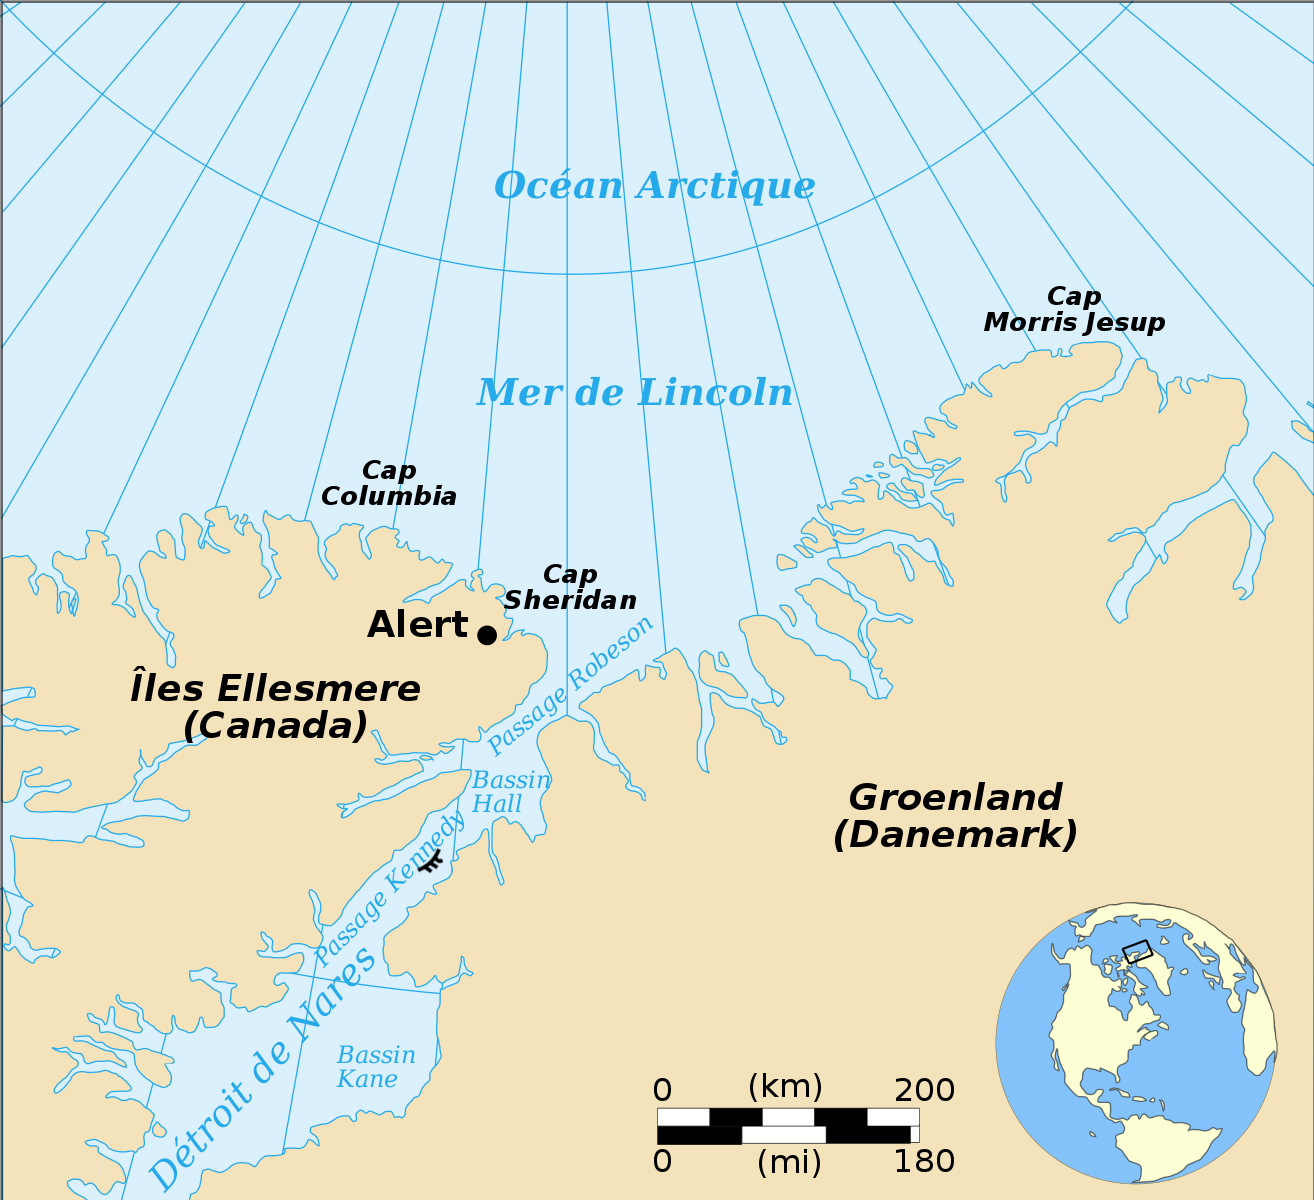 L'île Hans (annotée ᚈ) sur la carte, au sein du canal Kennedy.